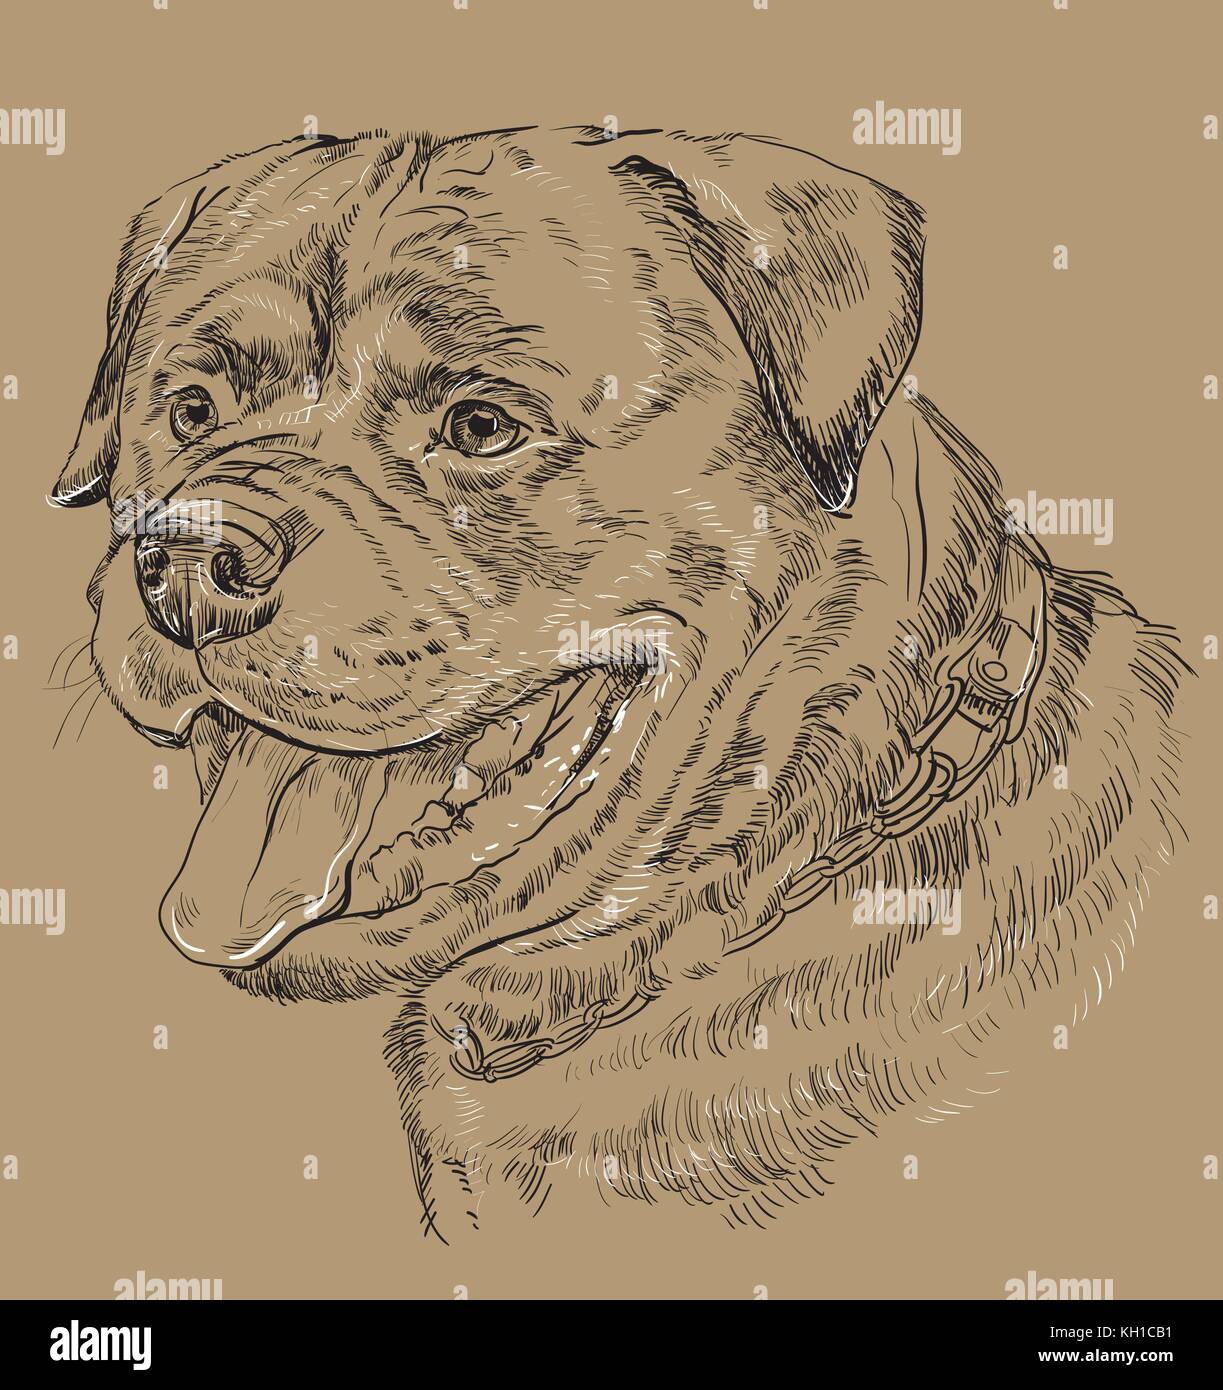 Rottweiler vector de dibujo a mano alzada en blanco y negro ilustración aislado sobre fondo beige Ilustración del Vector